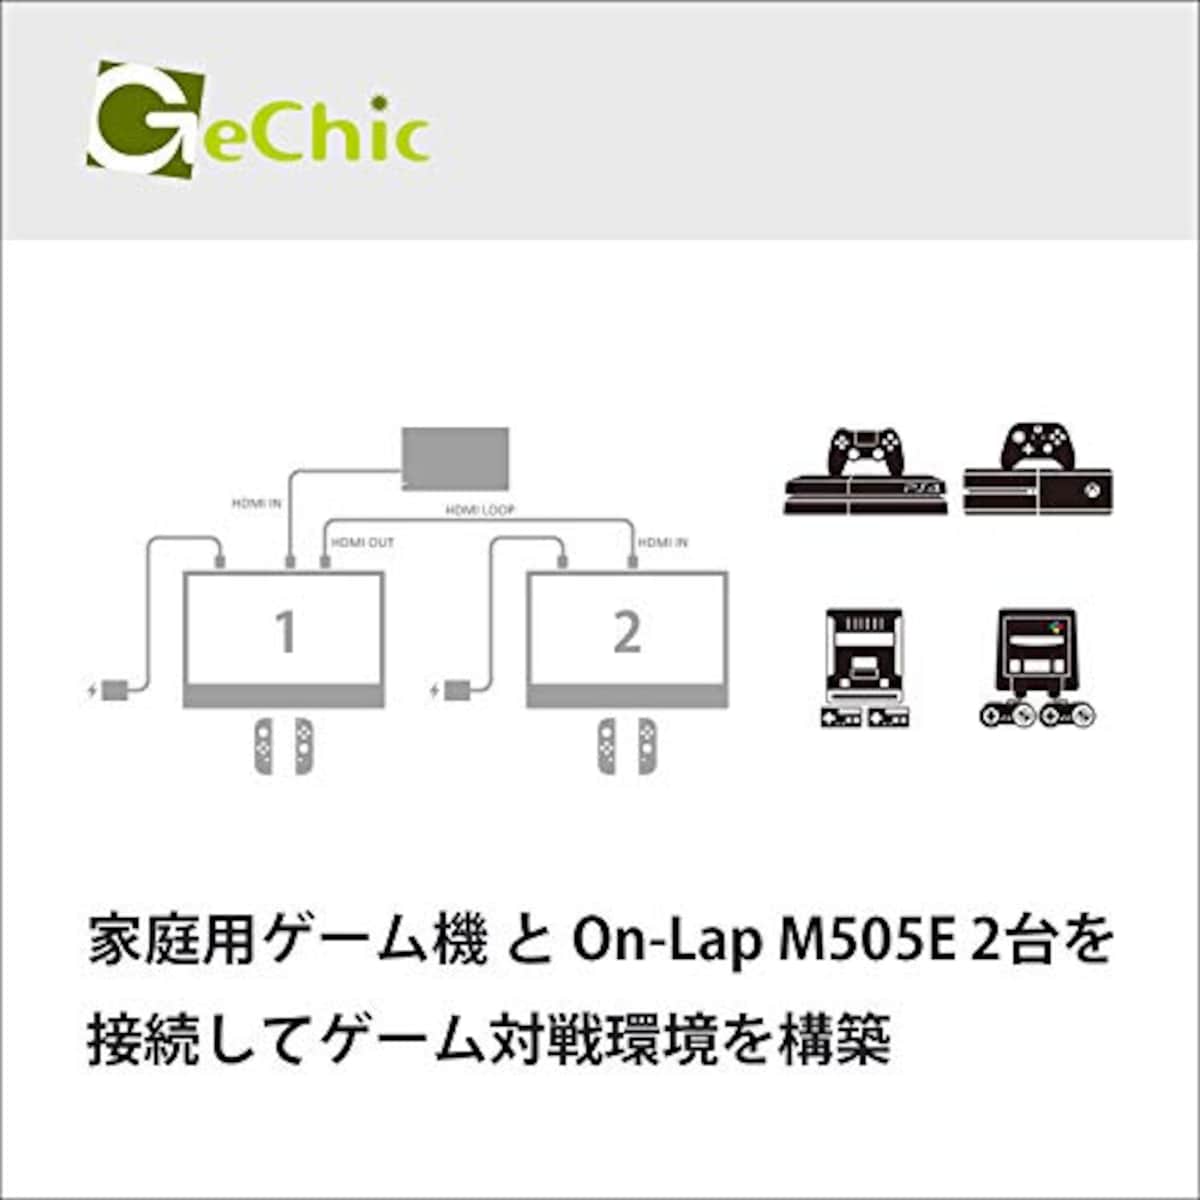  GeChic モバイルモニター On-Lap M505E 15.6インチ フルHD(1920x1080)液晶 USB Type-C/HDMI ハイブリッド映像入力 HDMI出力 IPS液晶 ブルーライト軽減 在宅ワーク用画像4 